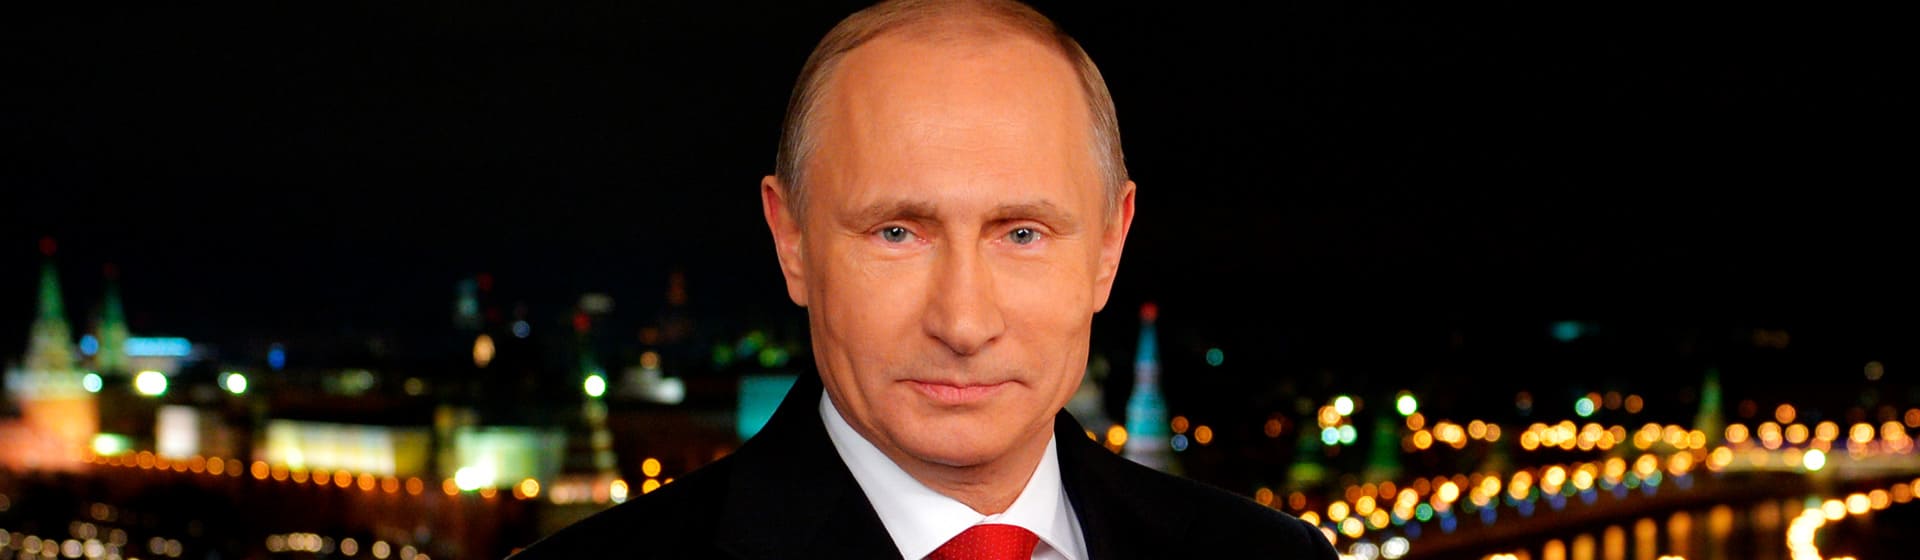 Владимир Путин - Мерч и одежда с атрибутикой